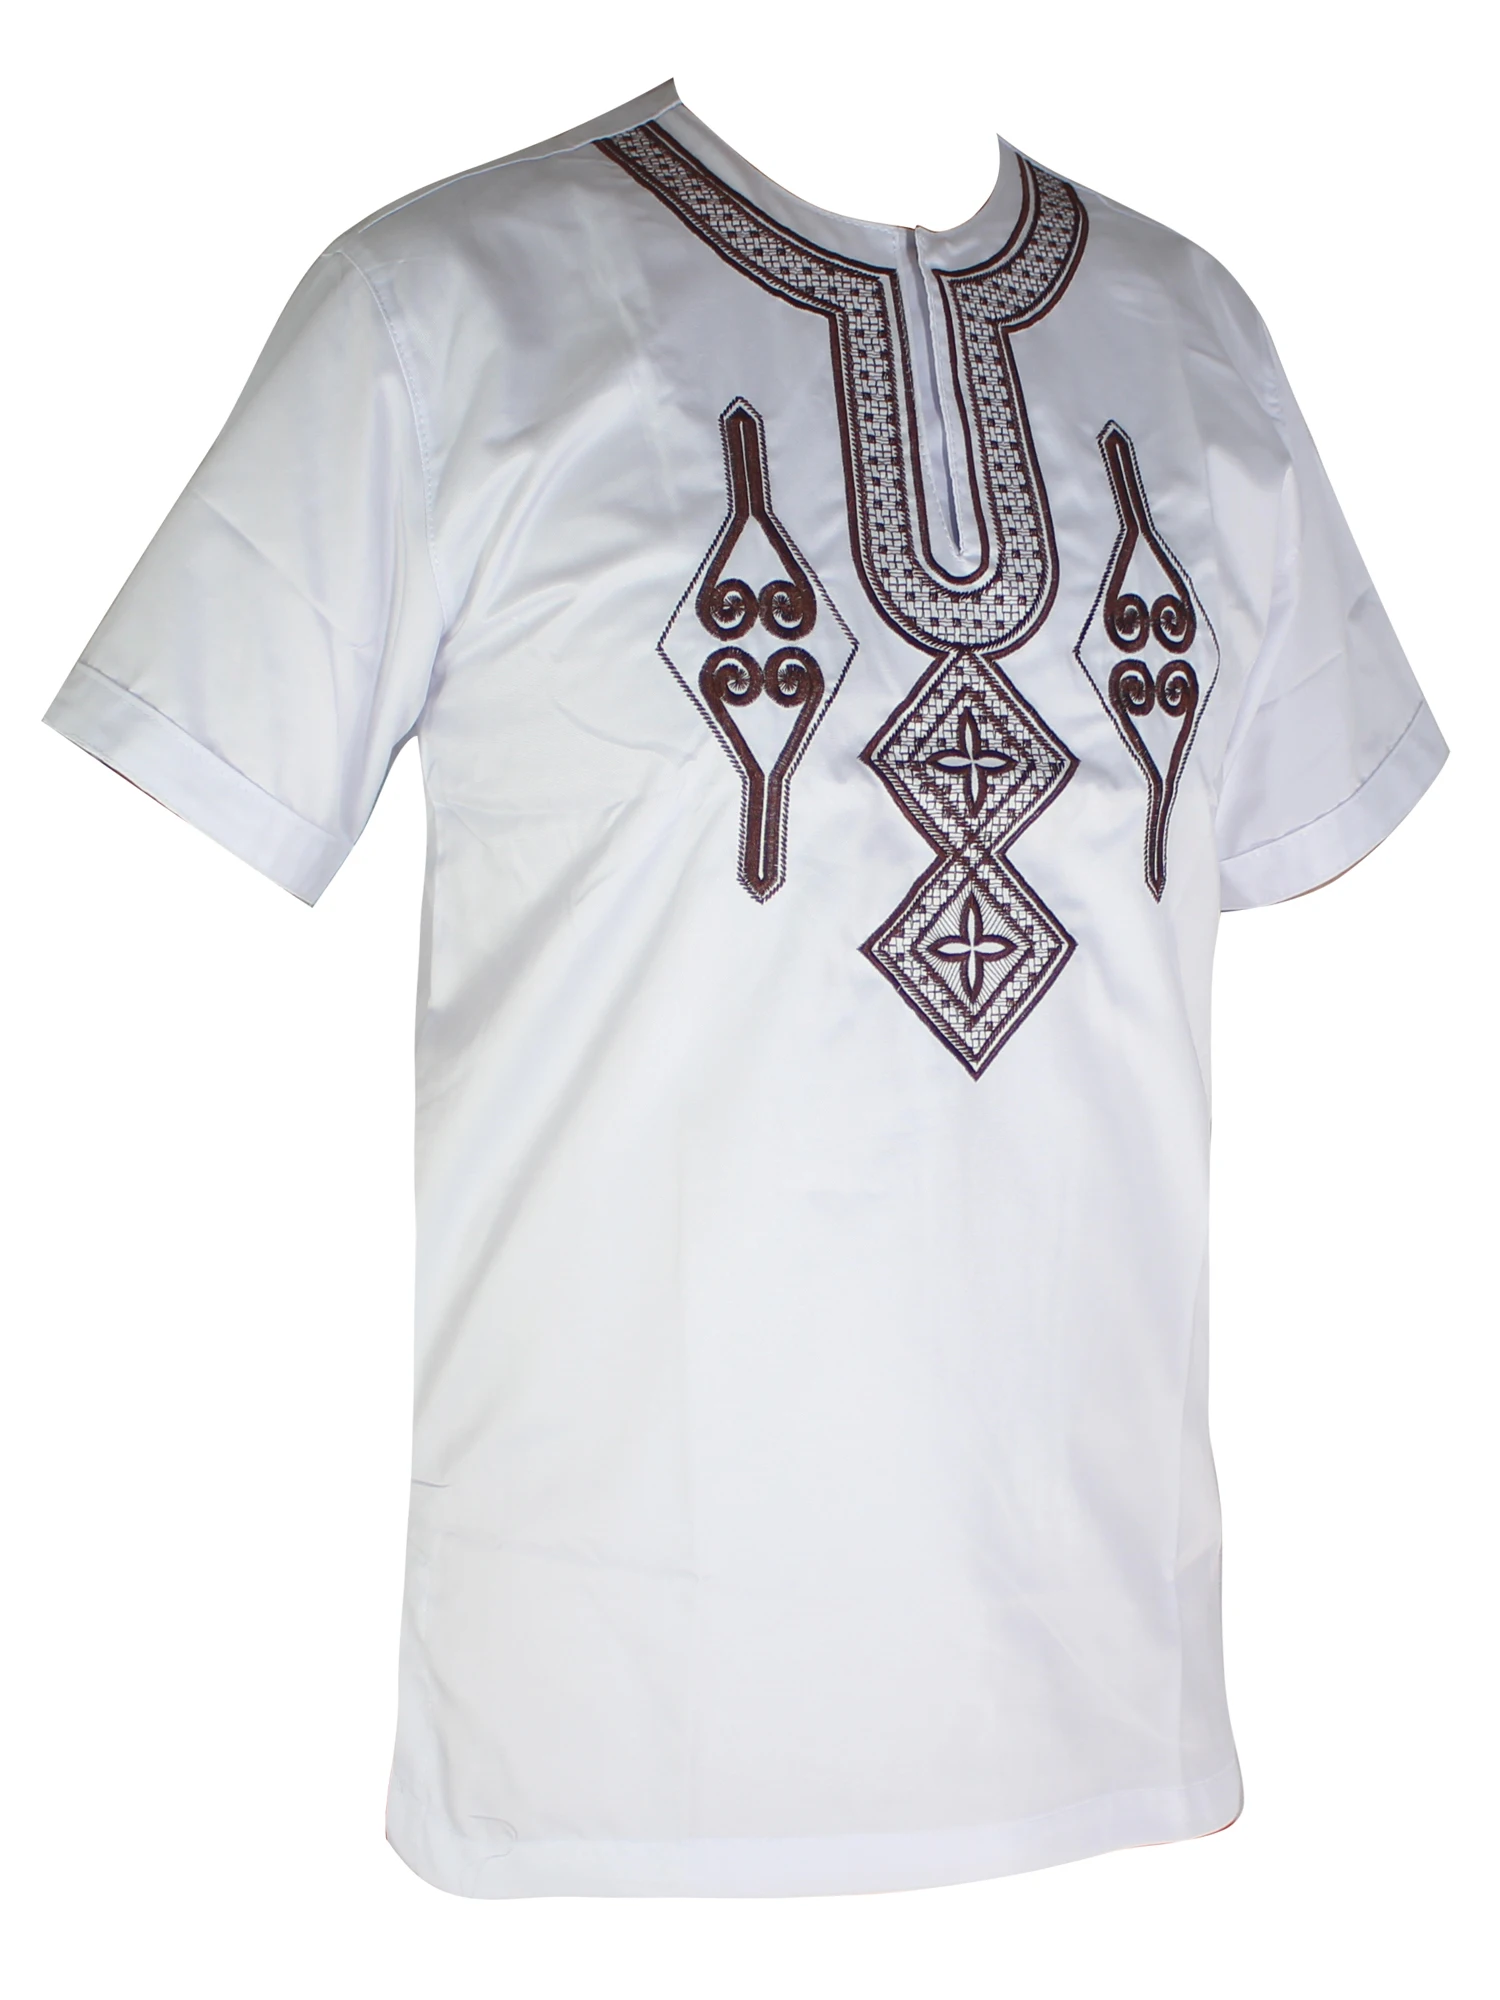 Африканская одежда Базен вышивка дизайн золотой мусульманская одежда для мужчин Дашики Новинка